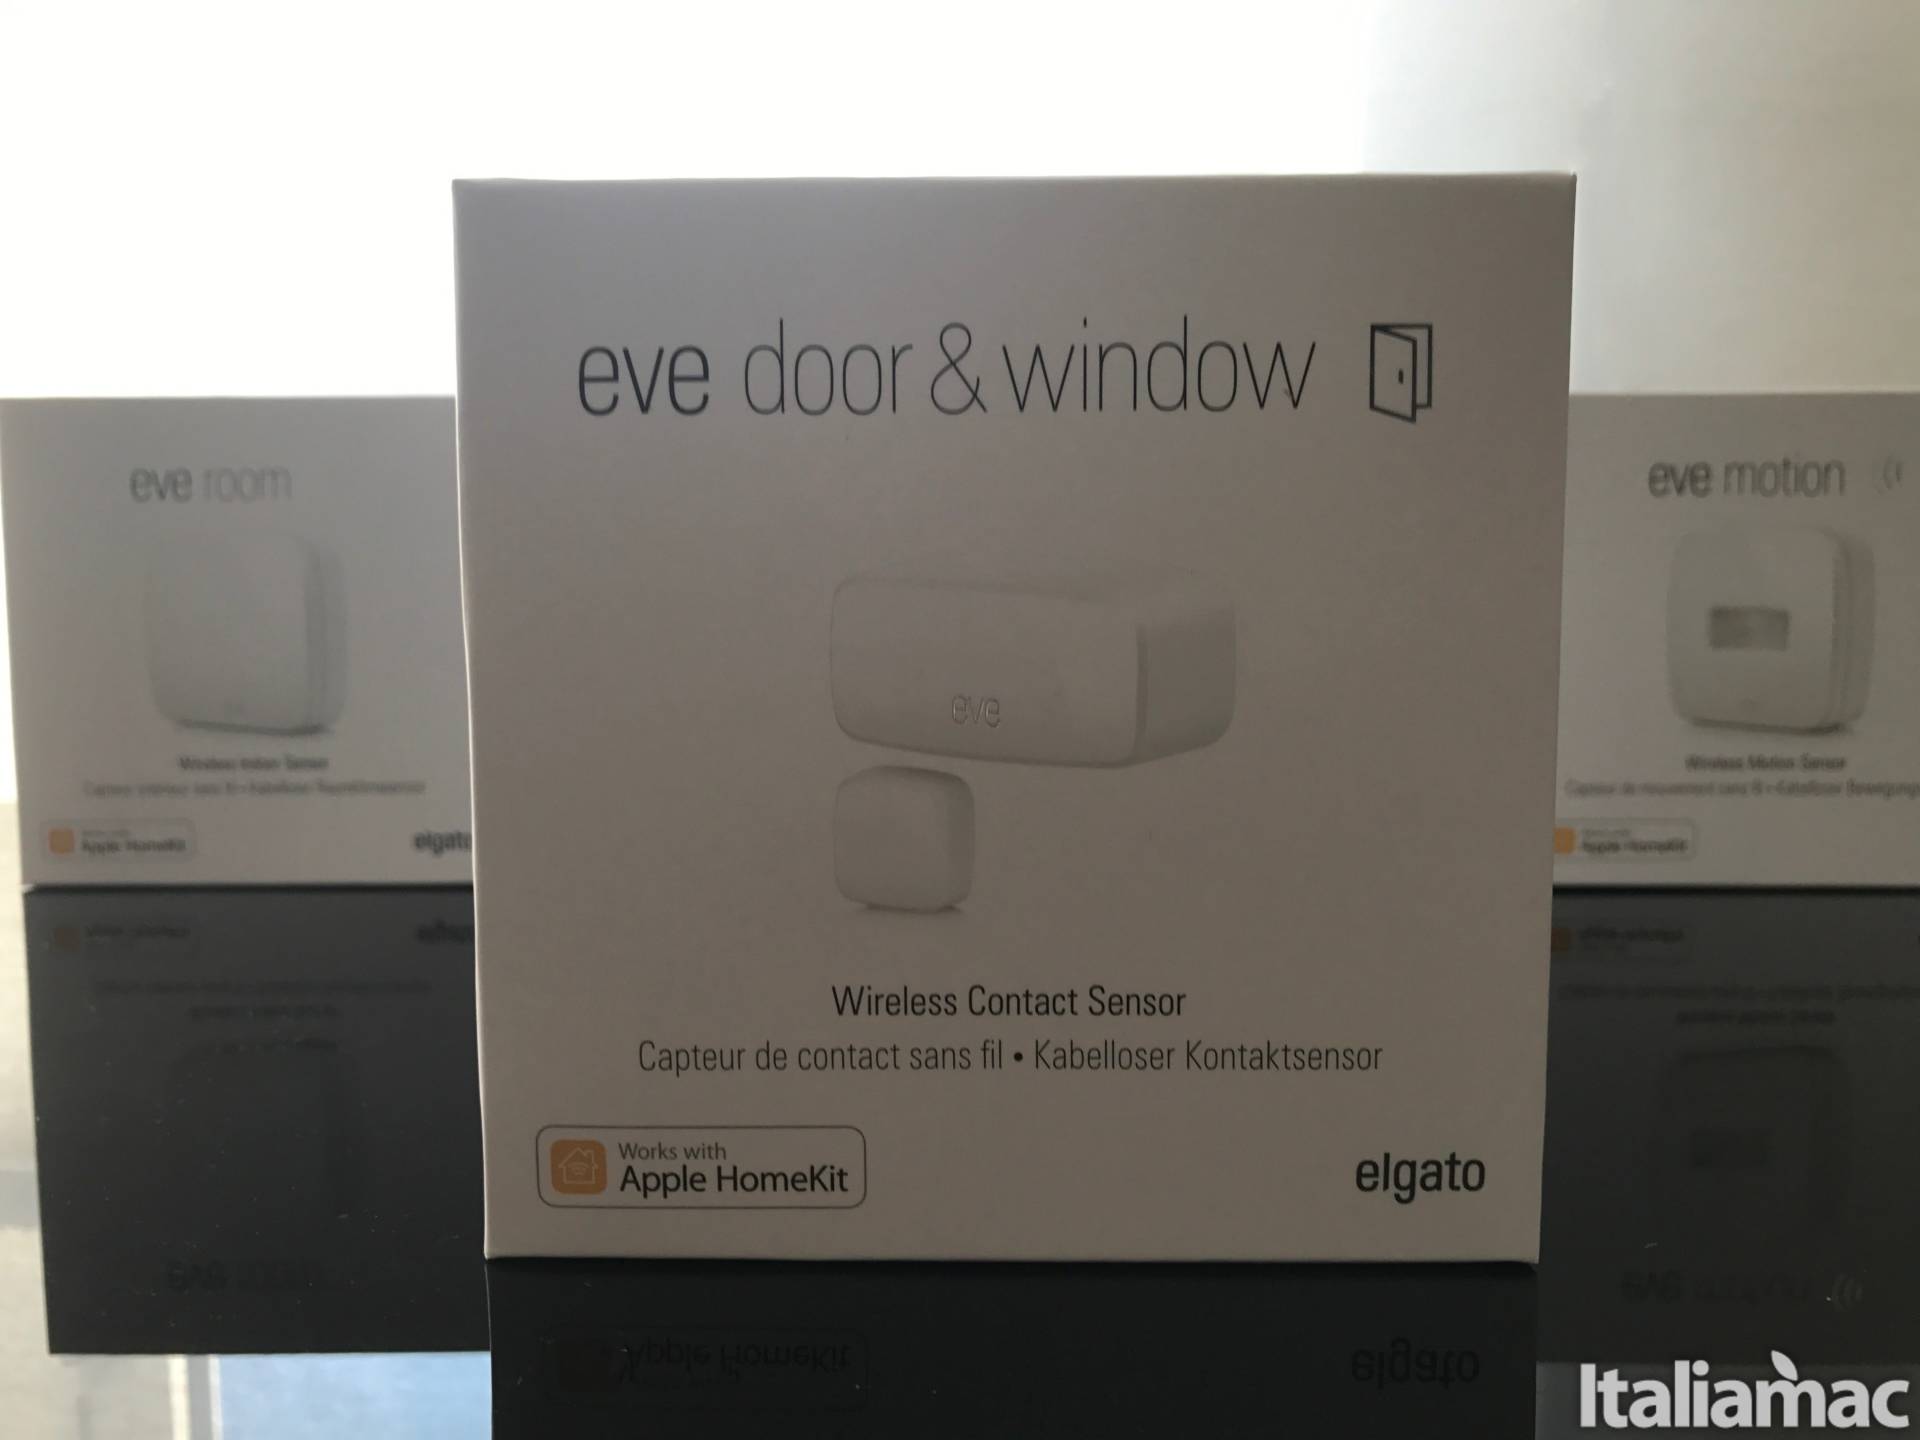 Eve Door & Window: Sensore in grado di rilevare se ci sono porte o finestre aperte 1